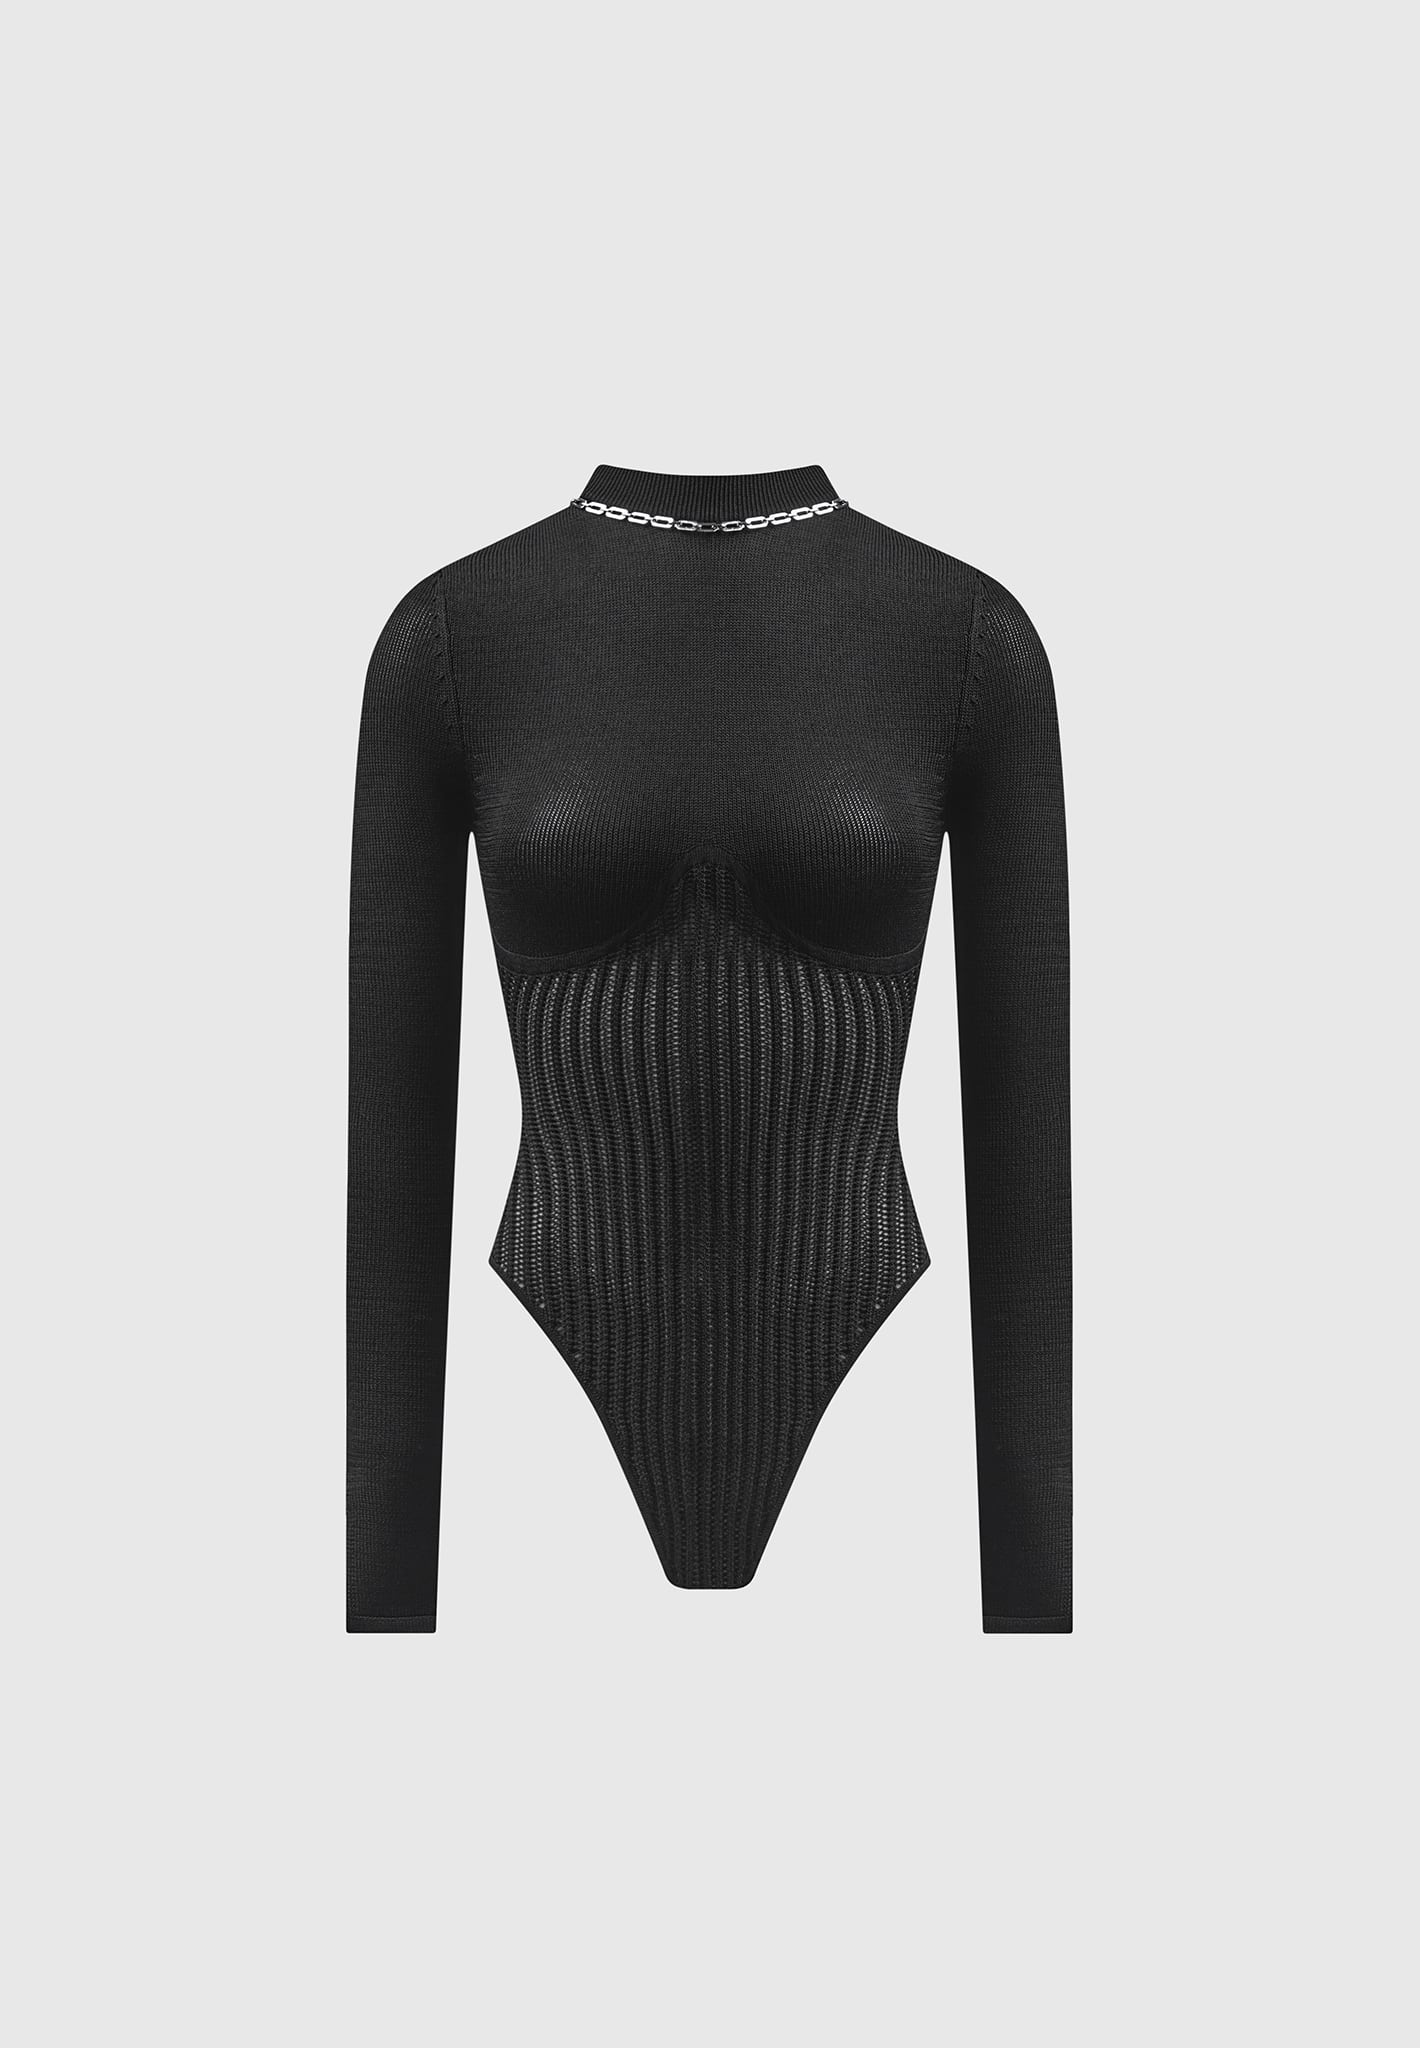 Women's Black Bodysuit Practice Top with Illusion Neckline, Large Flow –  Jeravae